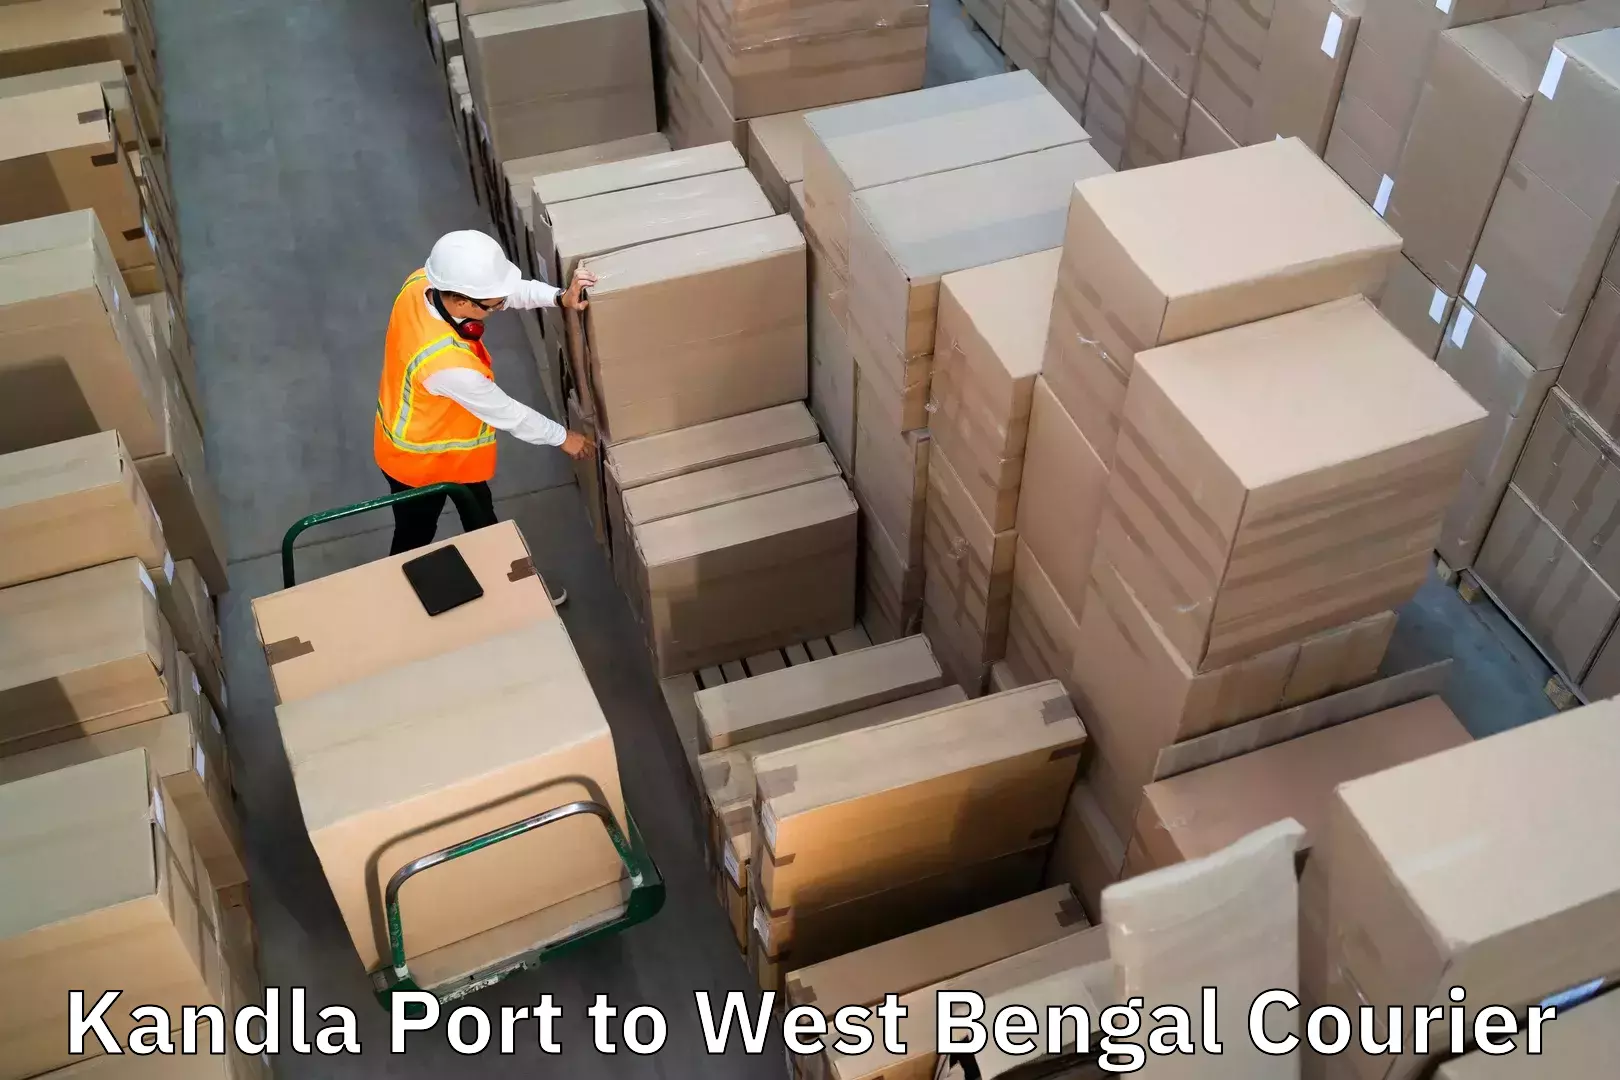 Luggage delivery network Kandla Port to Bamangola